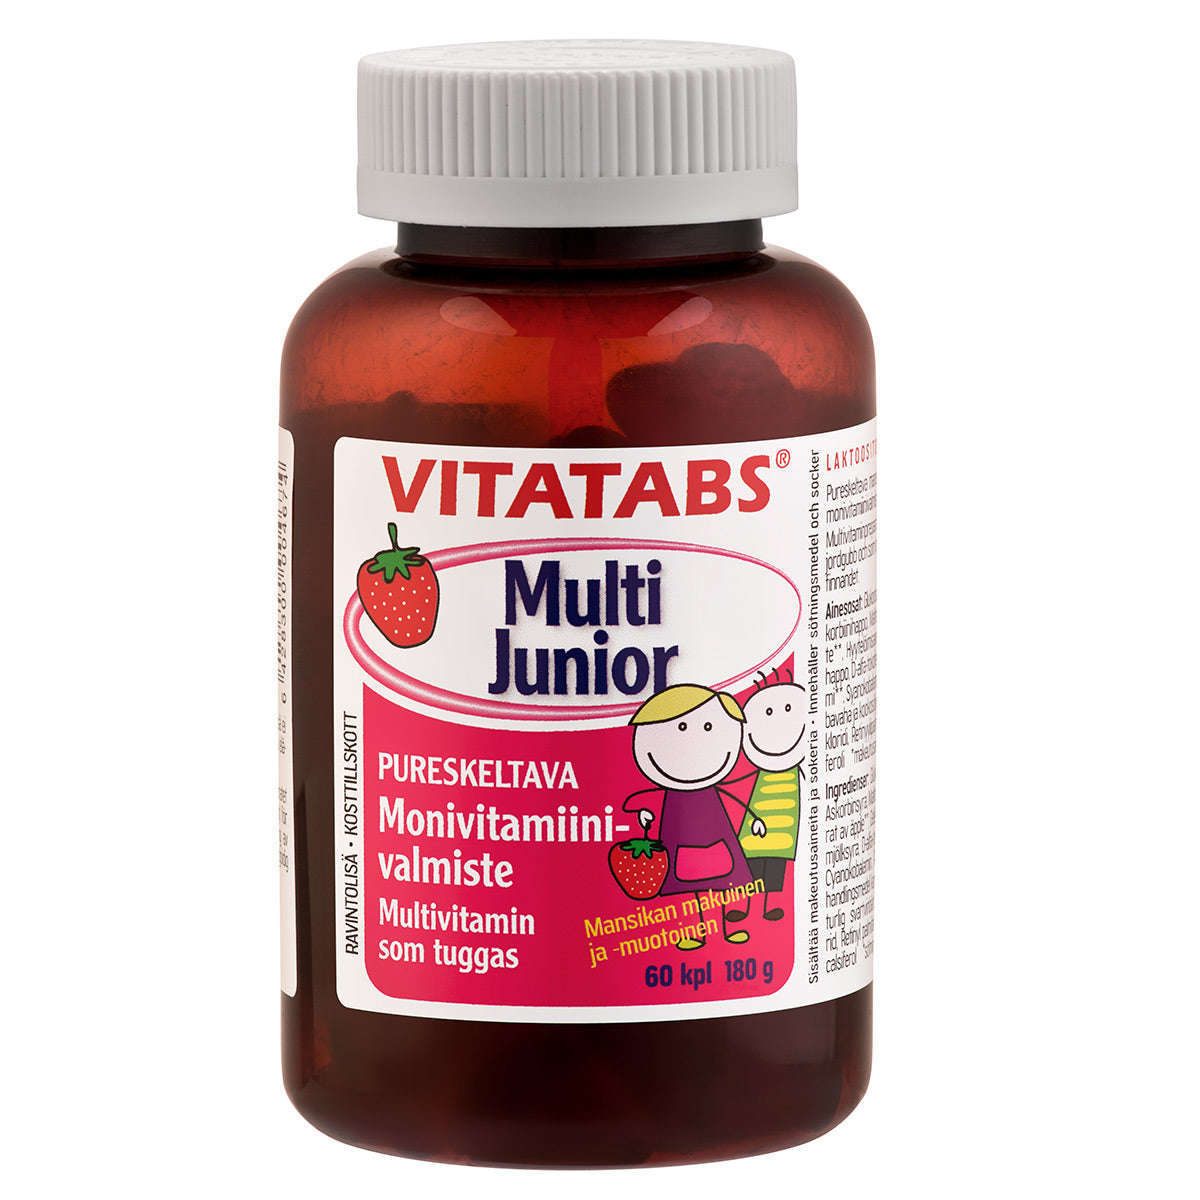 Vitatabs Multi Junior